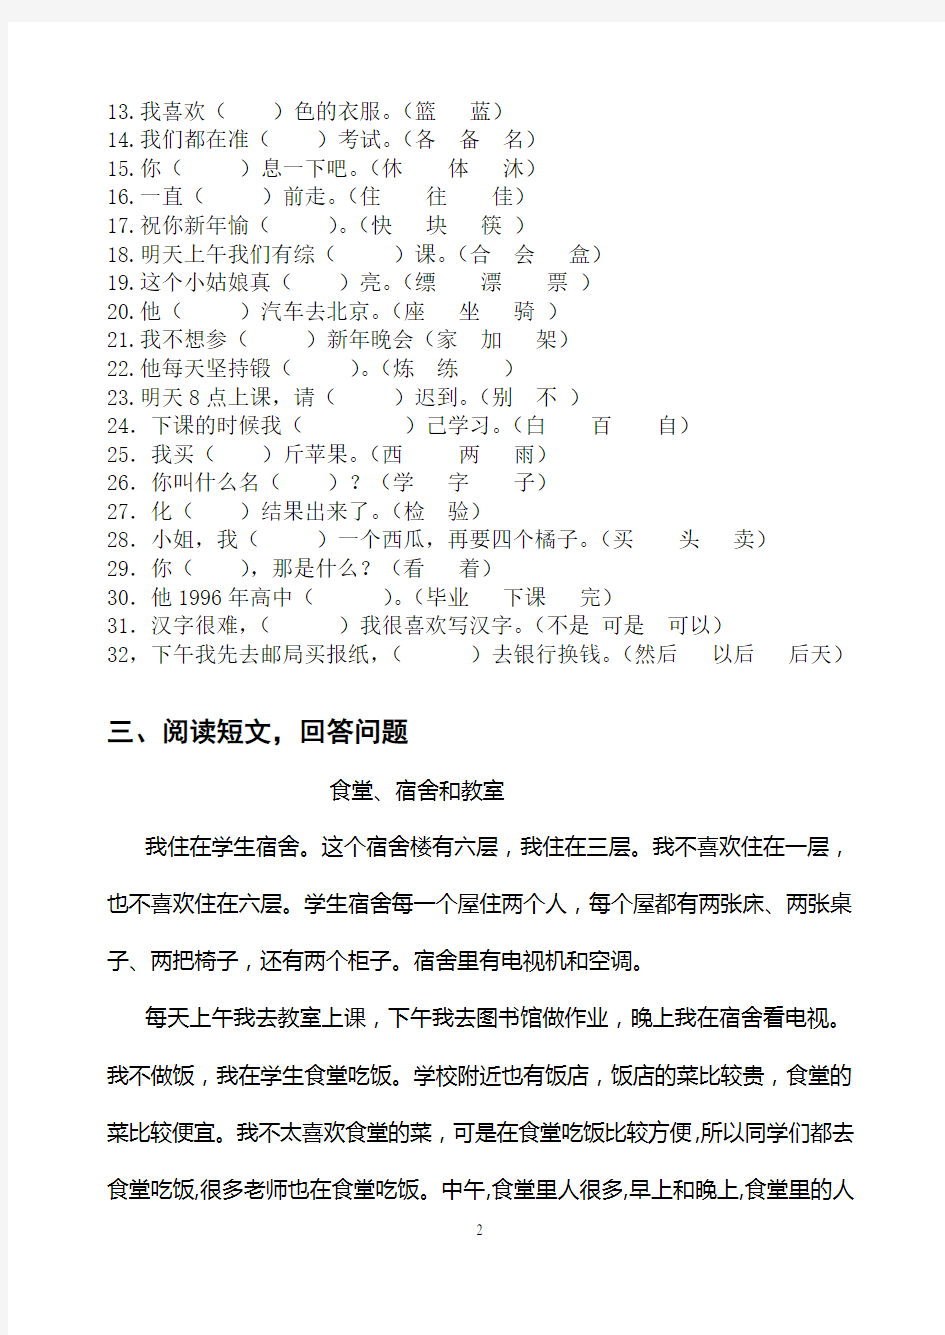 初级汉语读写课练习题1